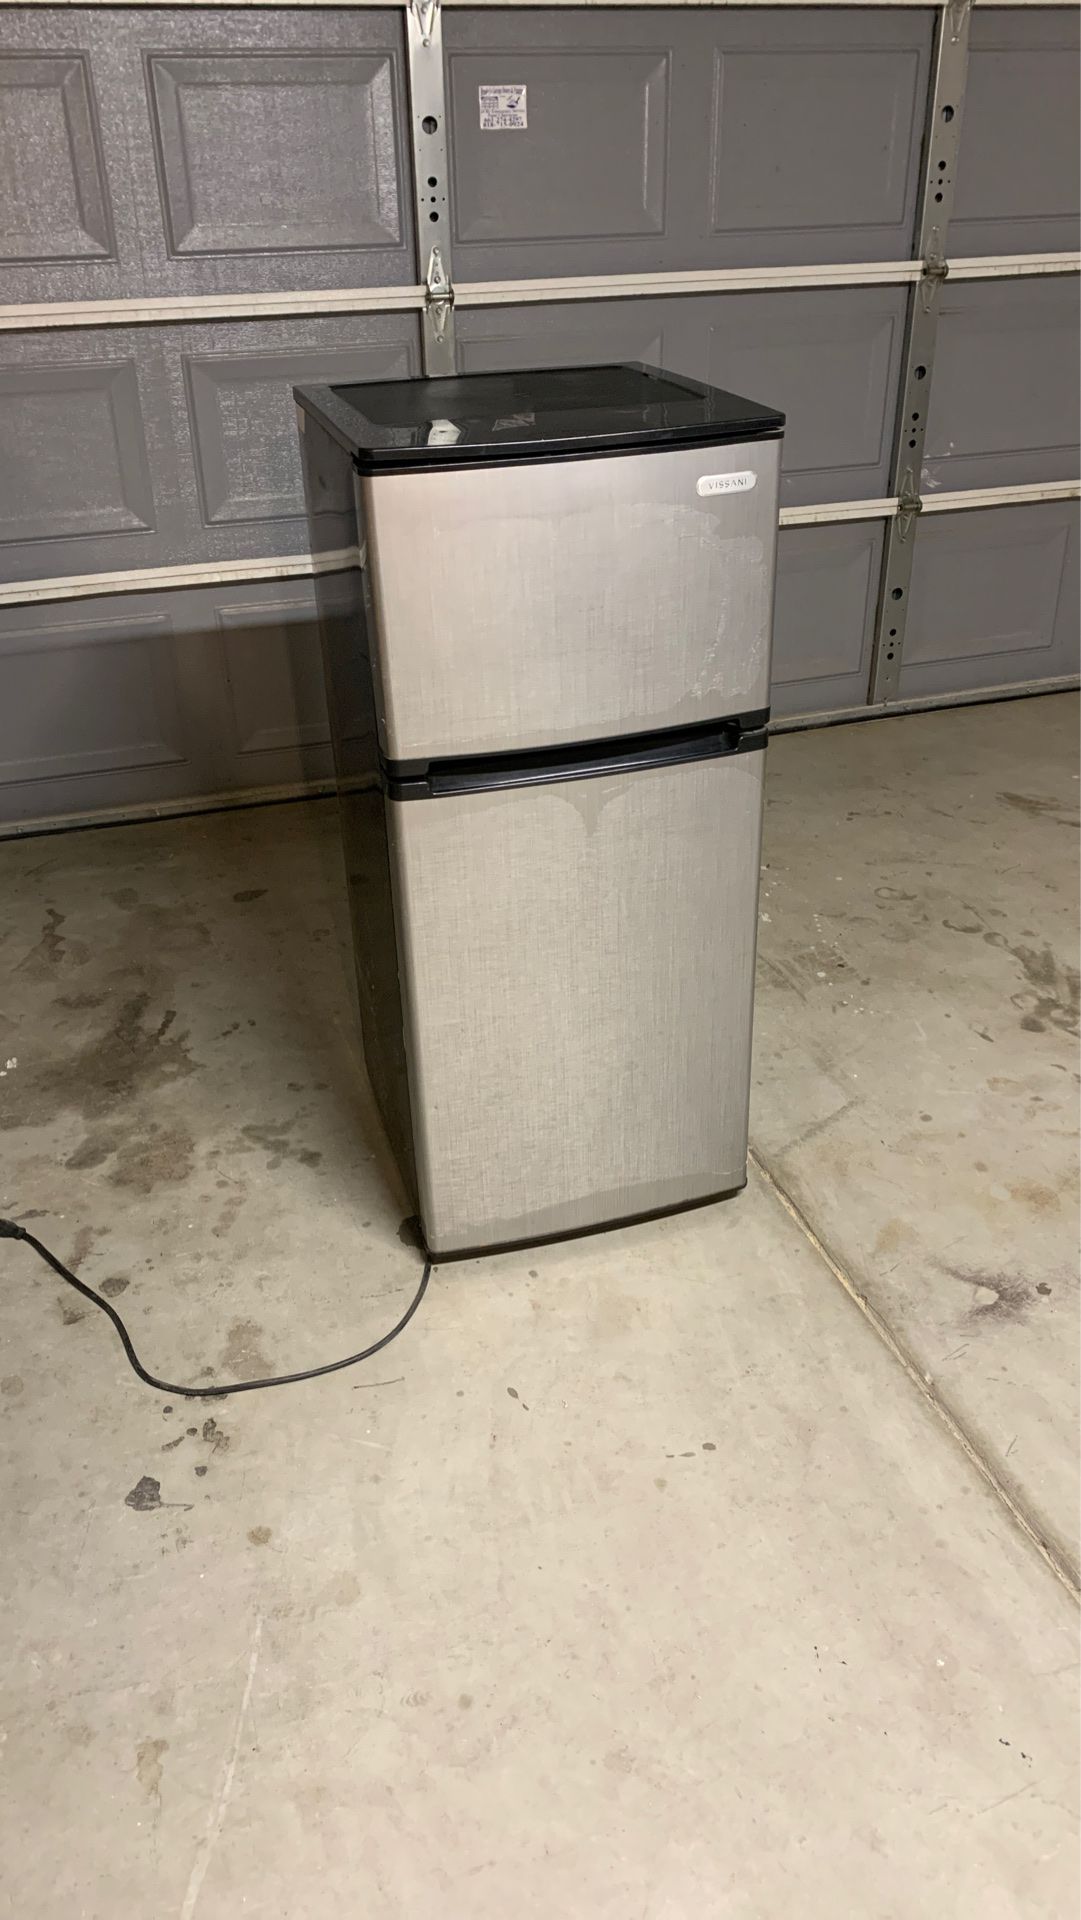 Used medium sized fridge with freezer $100. Length: 43.5 Width 19